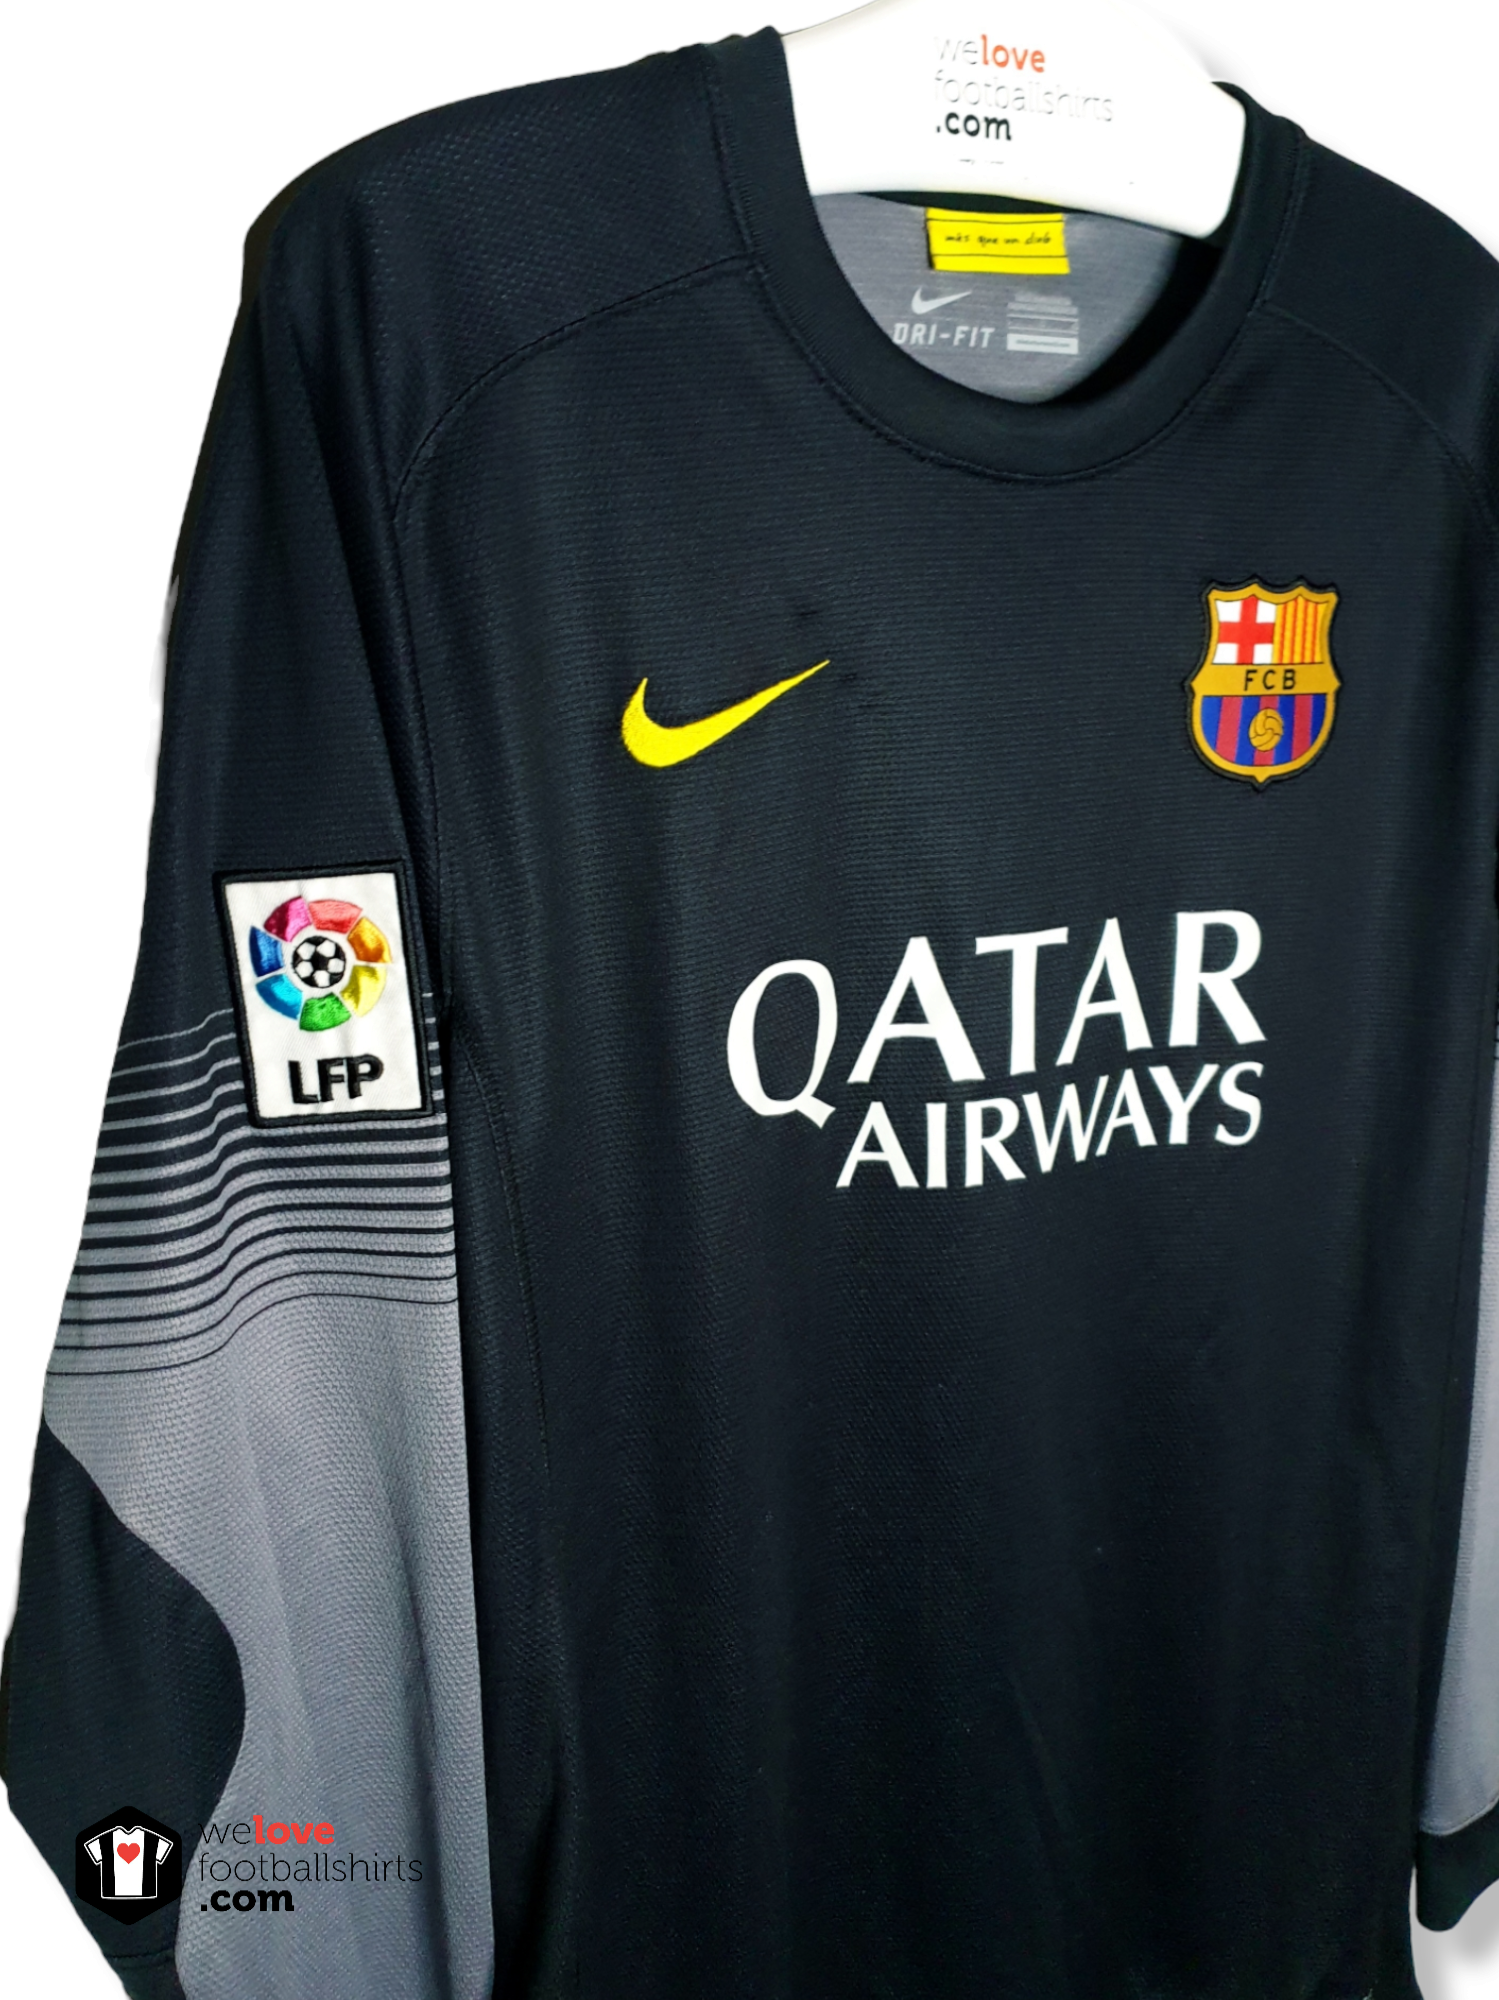 Scharnier moe Zwart Nike keepersshirt FC Barcelona 2013/14 - Welovefootballshirts.com